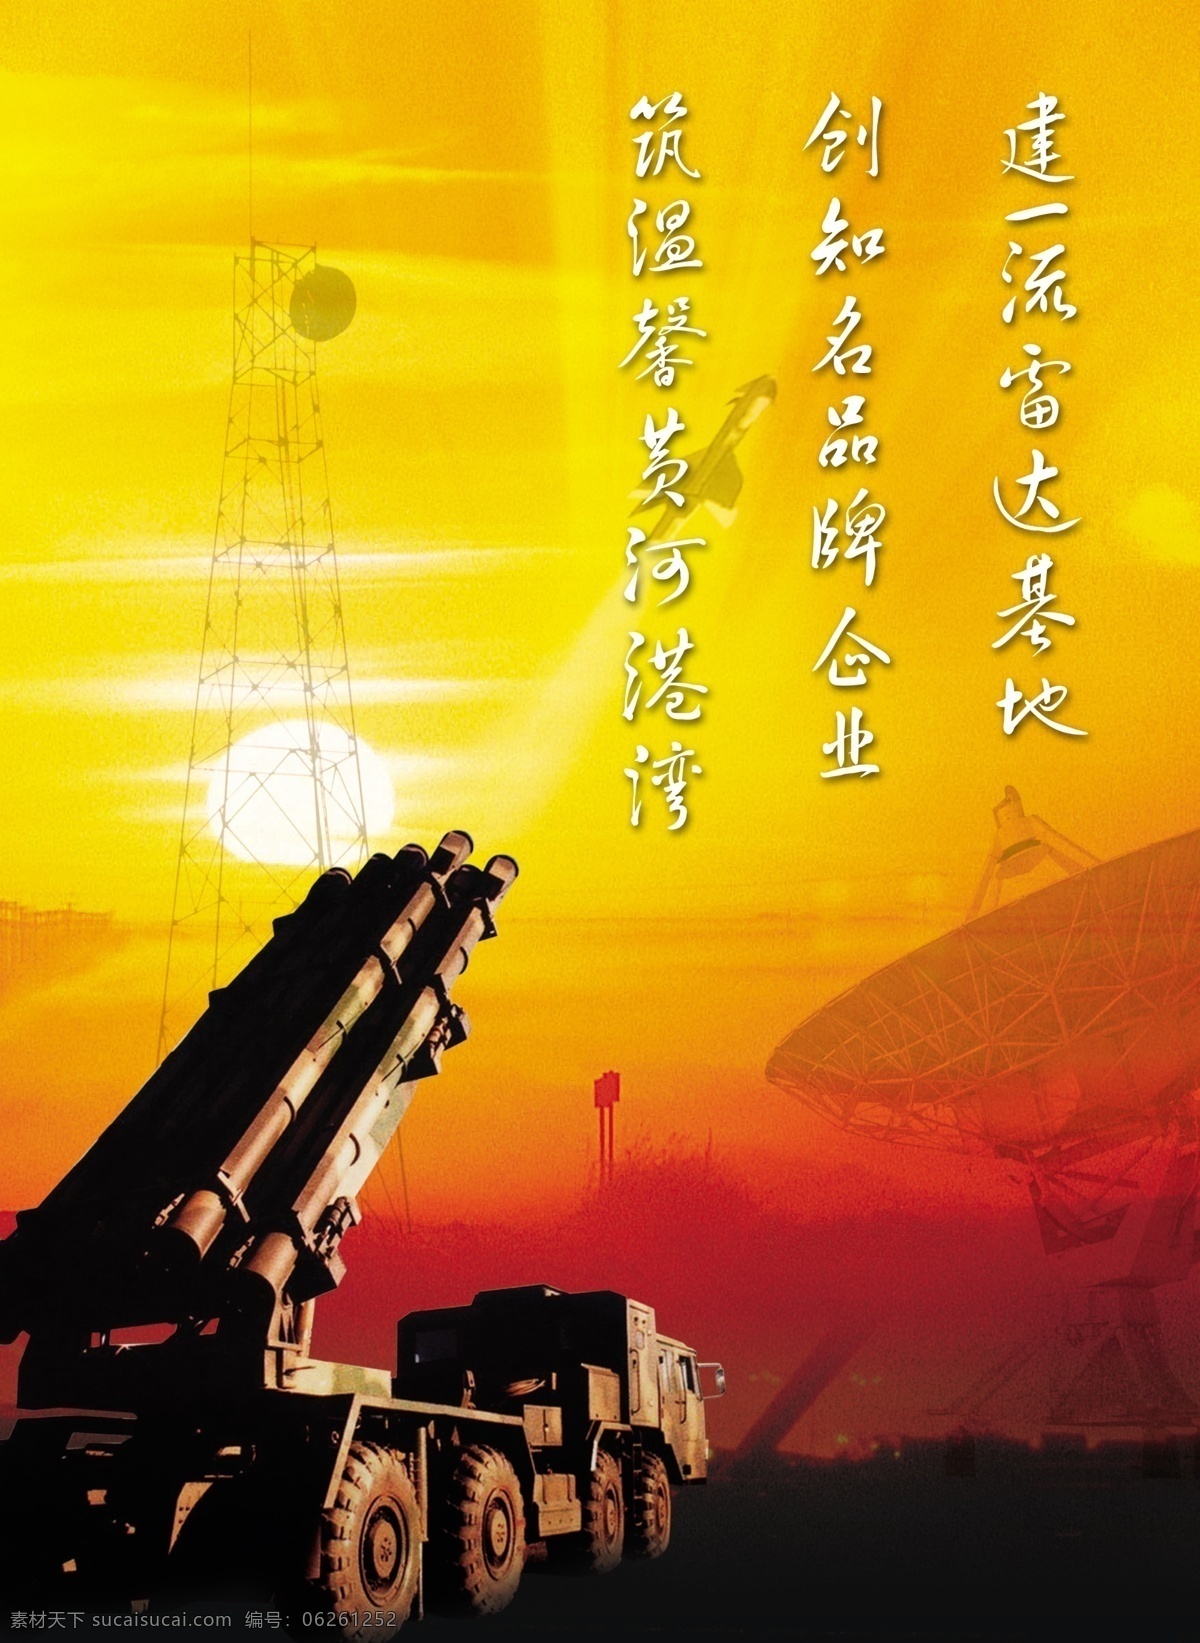 国防 重武器 火箭炮 雷达 天线 导弹 广告设计模板 源文件